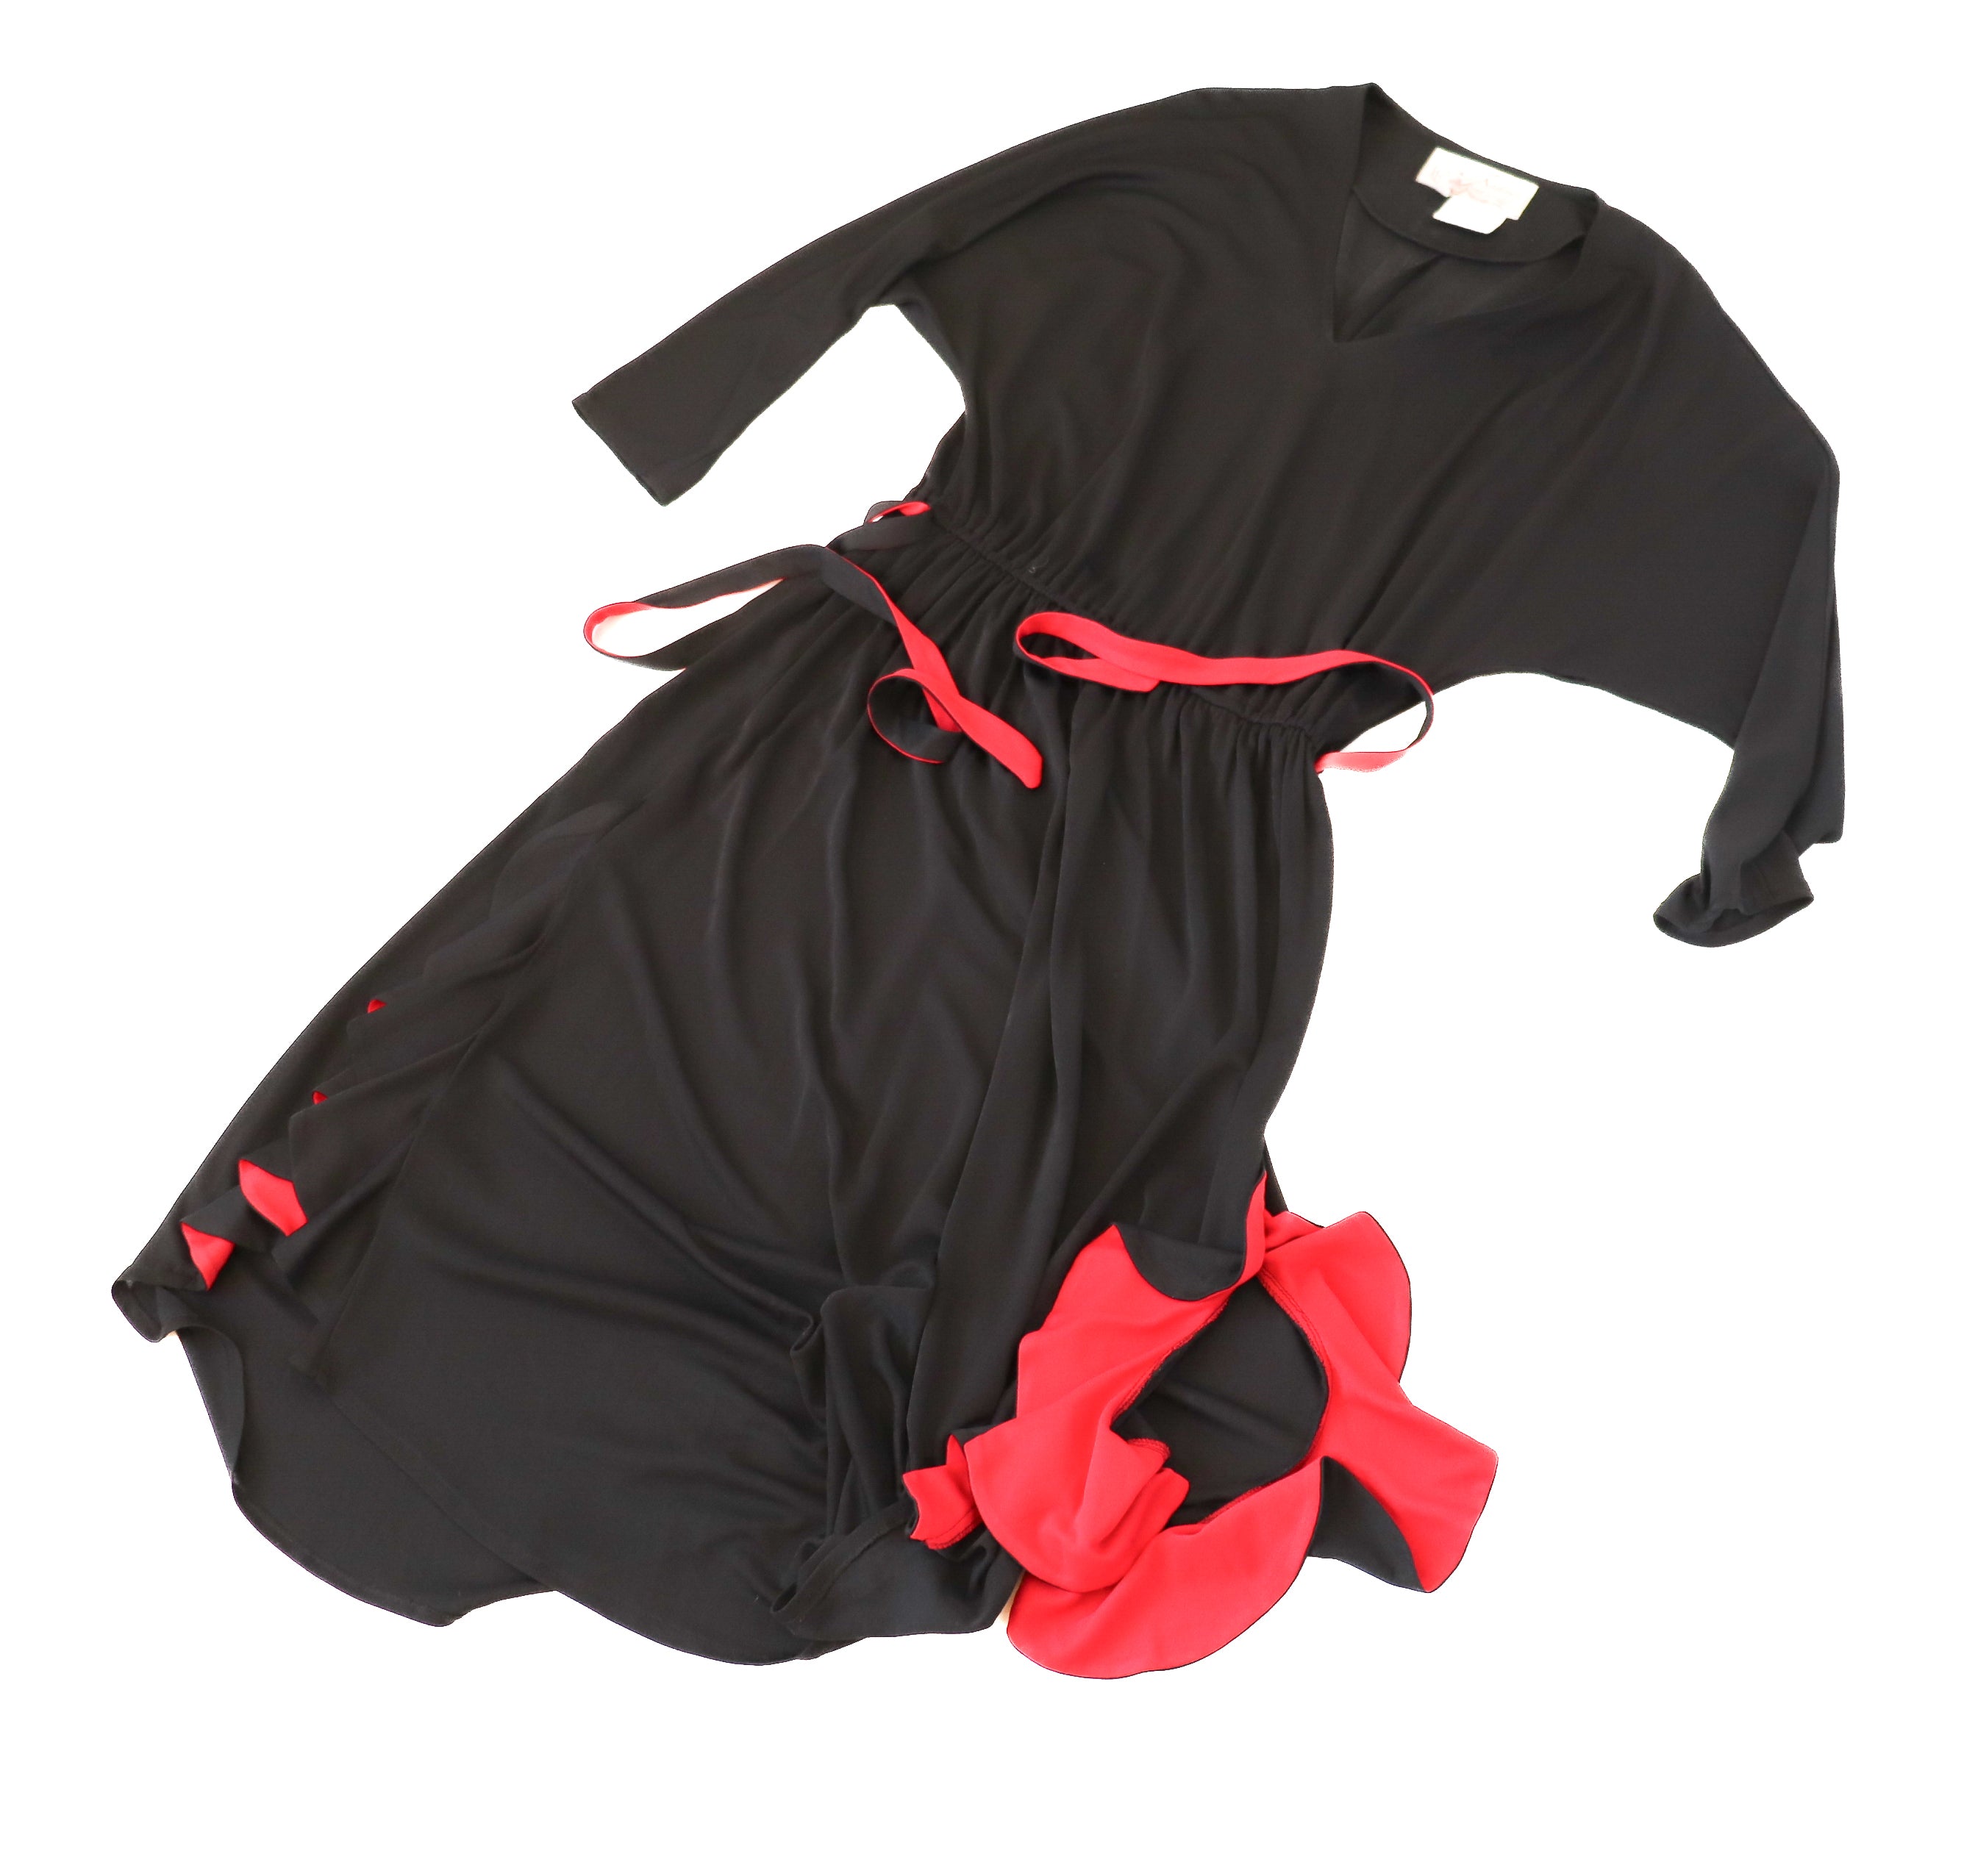 Radley Black / Red Dress - Vintage 1970s - Polyester - Fit M / UK 12